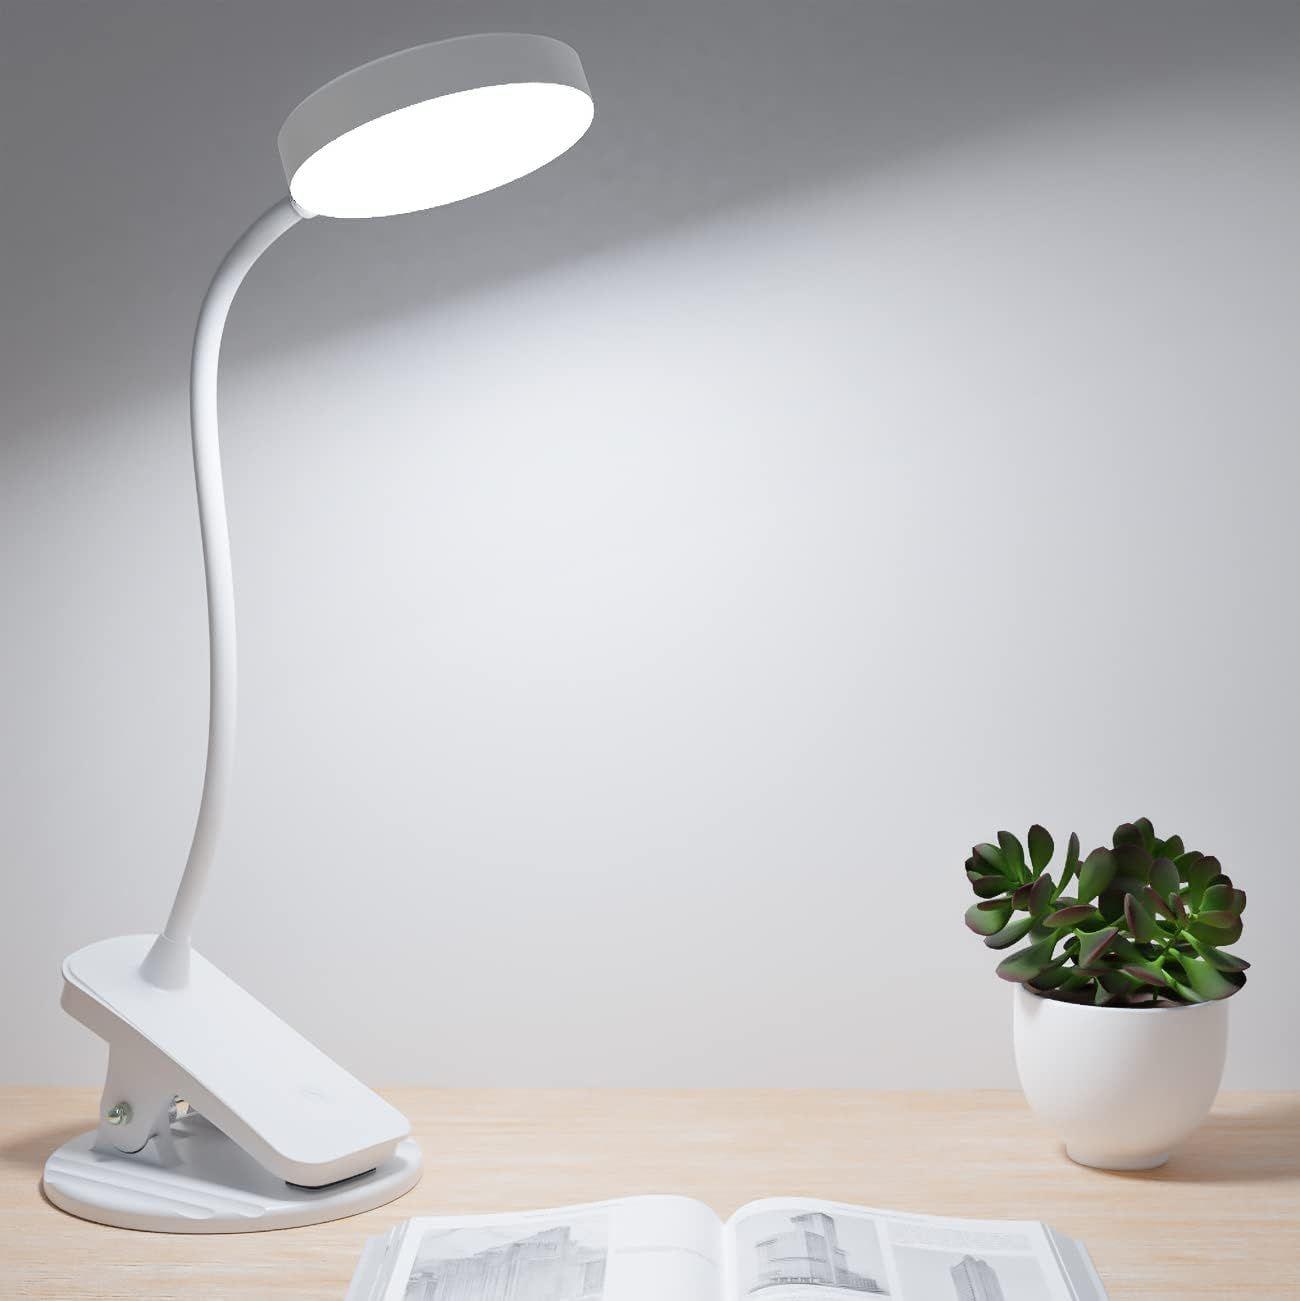 Mefine Lampe Pince 32 LED Lampe Bureau Pince Rechargeable Lampe Pince pour  Lit Lampe Flexible Chevet Pince avec 3 Modes d’Éclairage et Dimmable